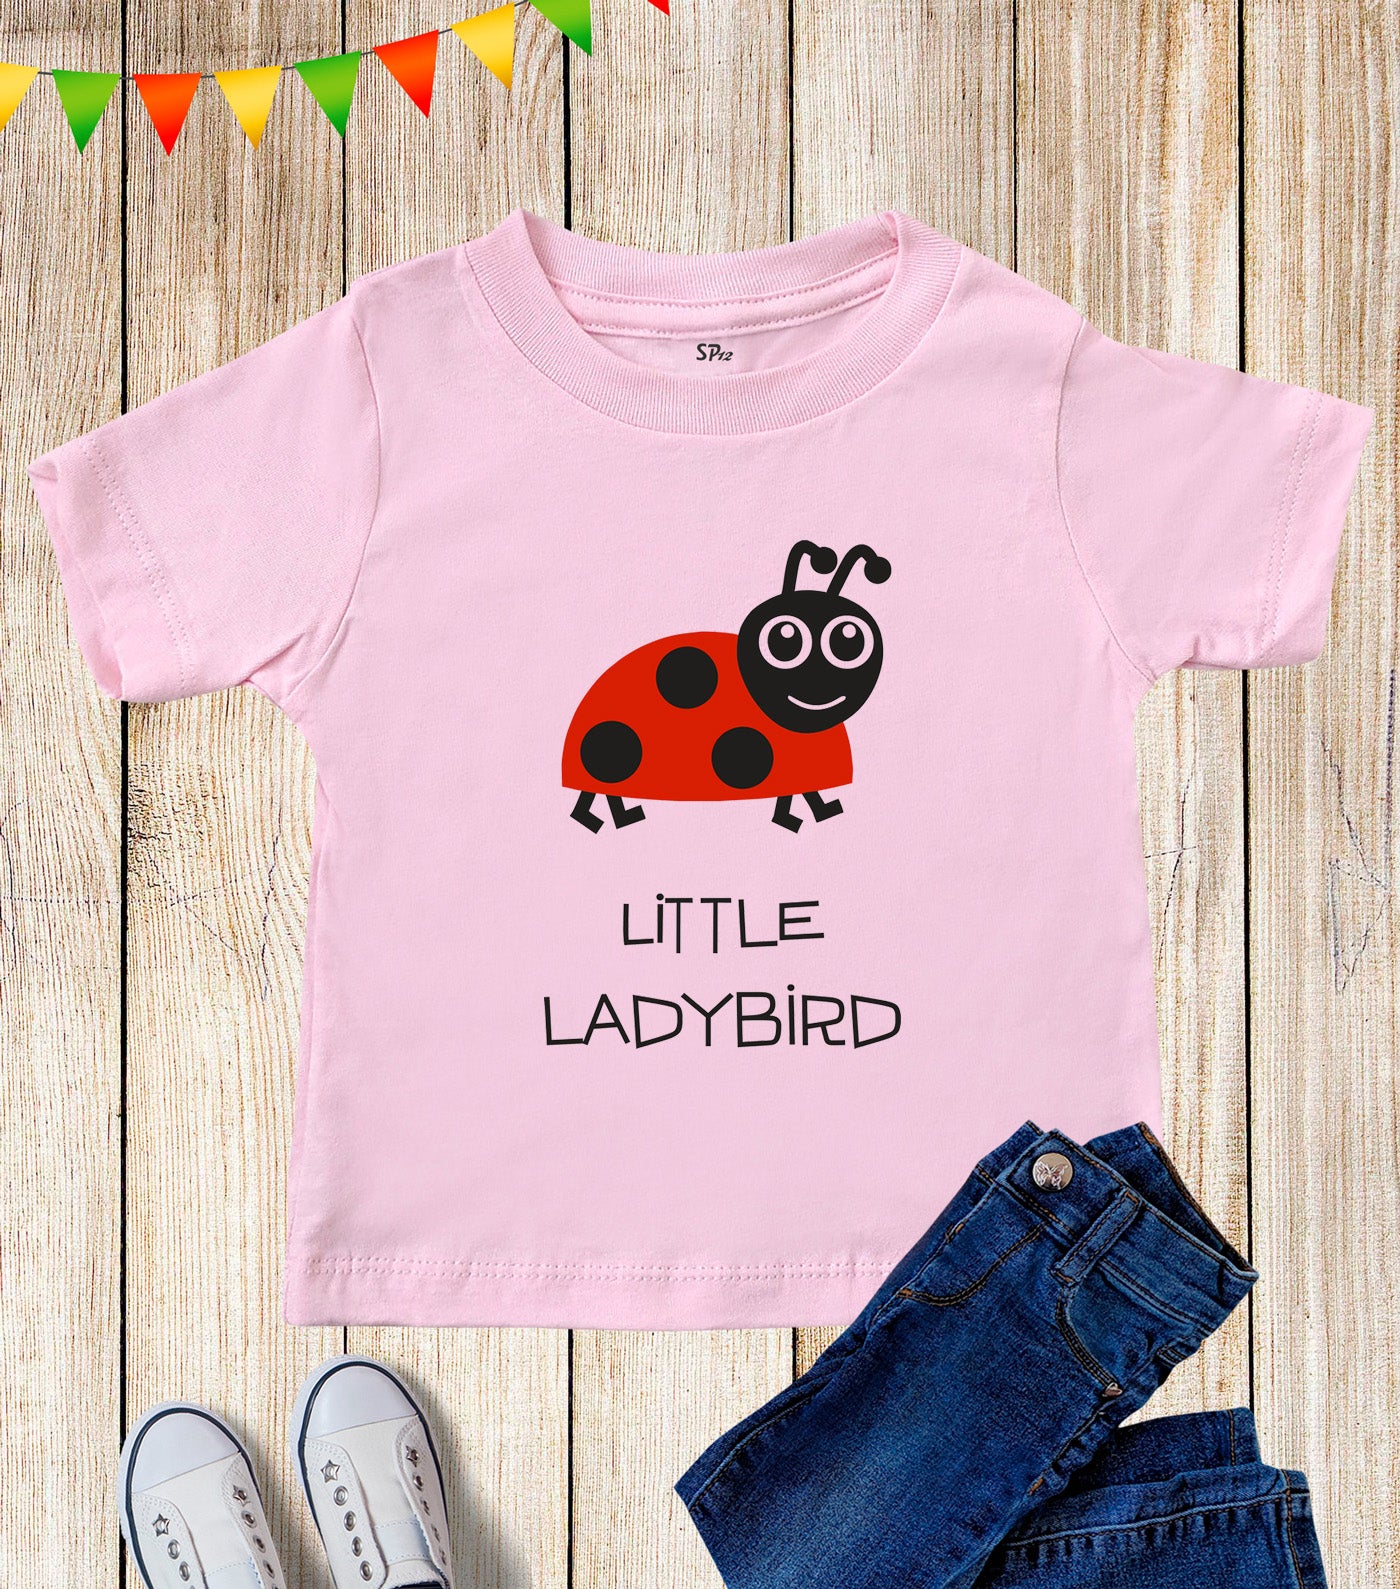 Little Ladybird Graphic Kids T Shirt